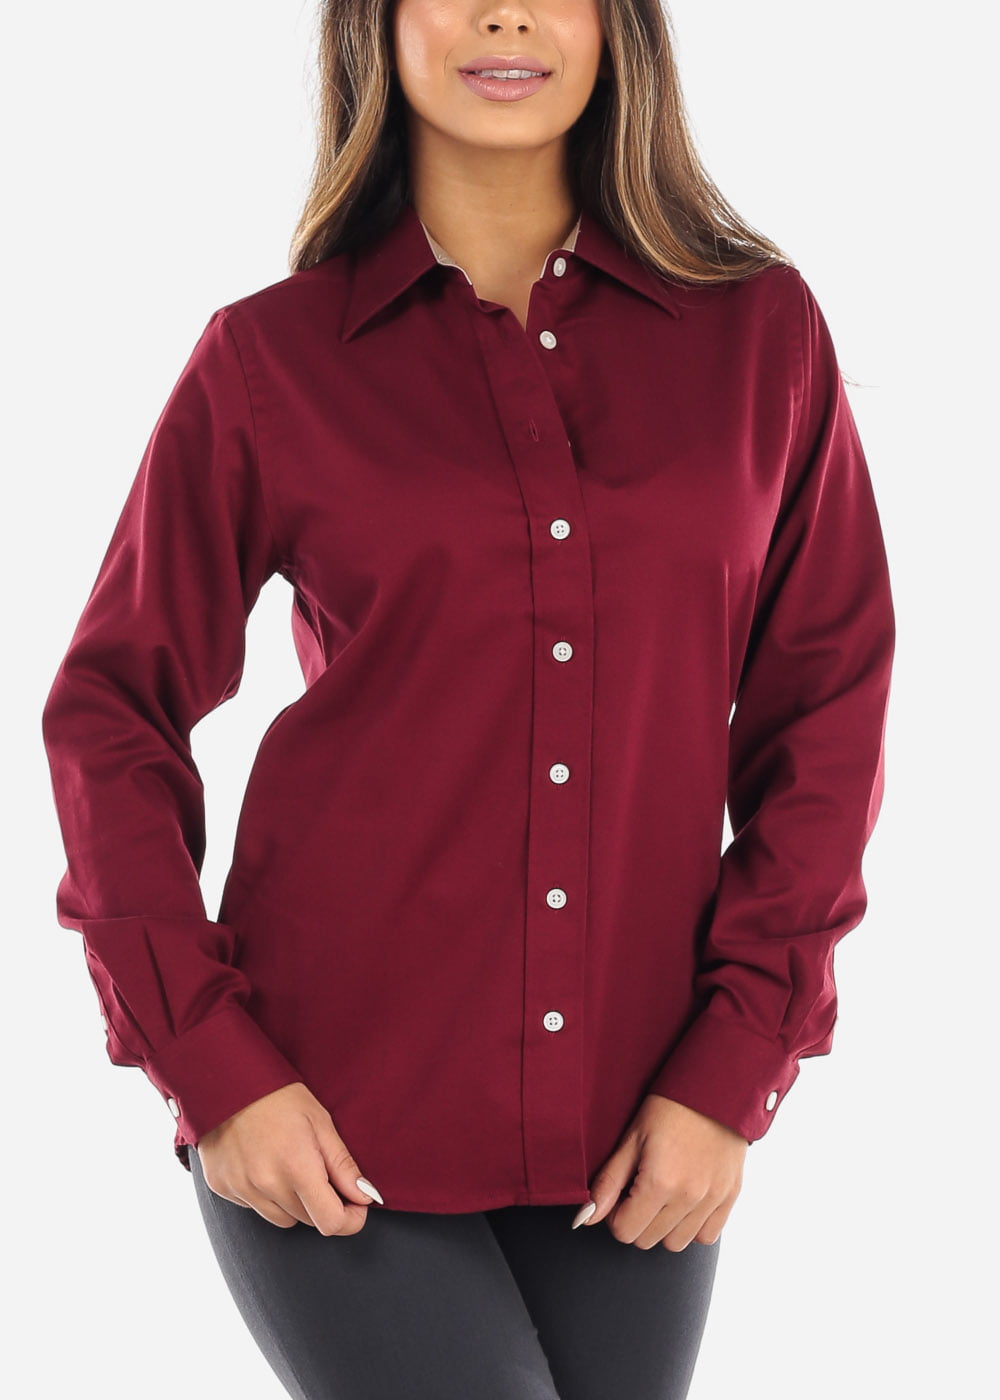 burgundy button up shirt womens